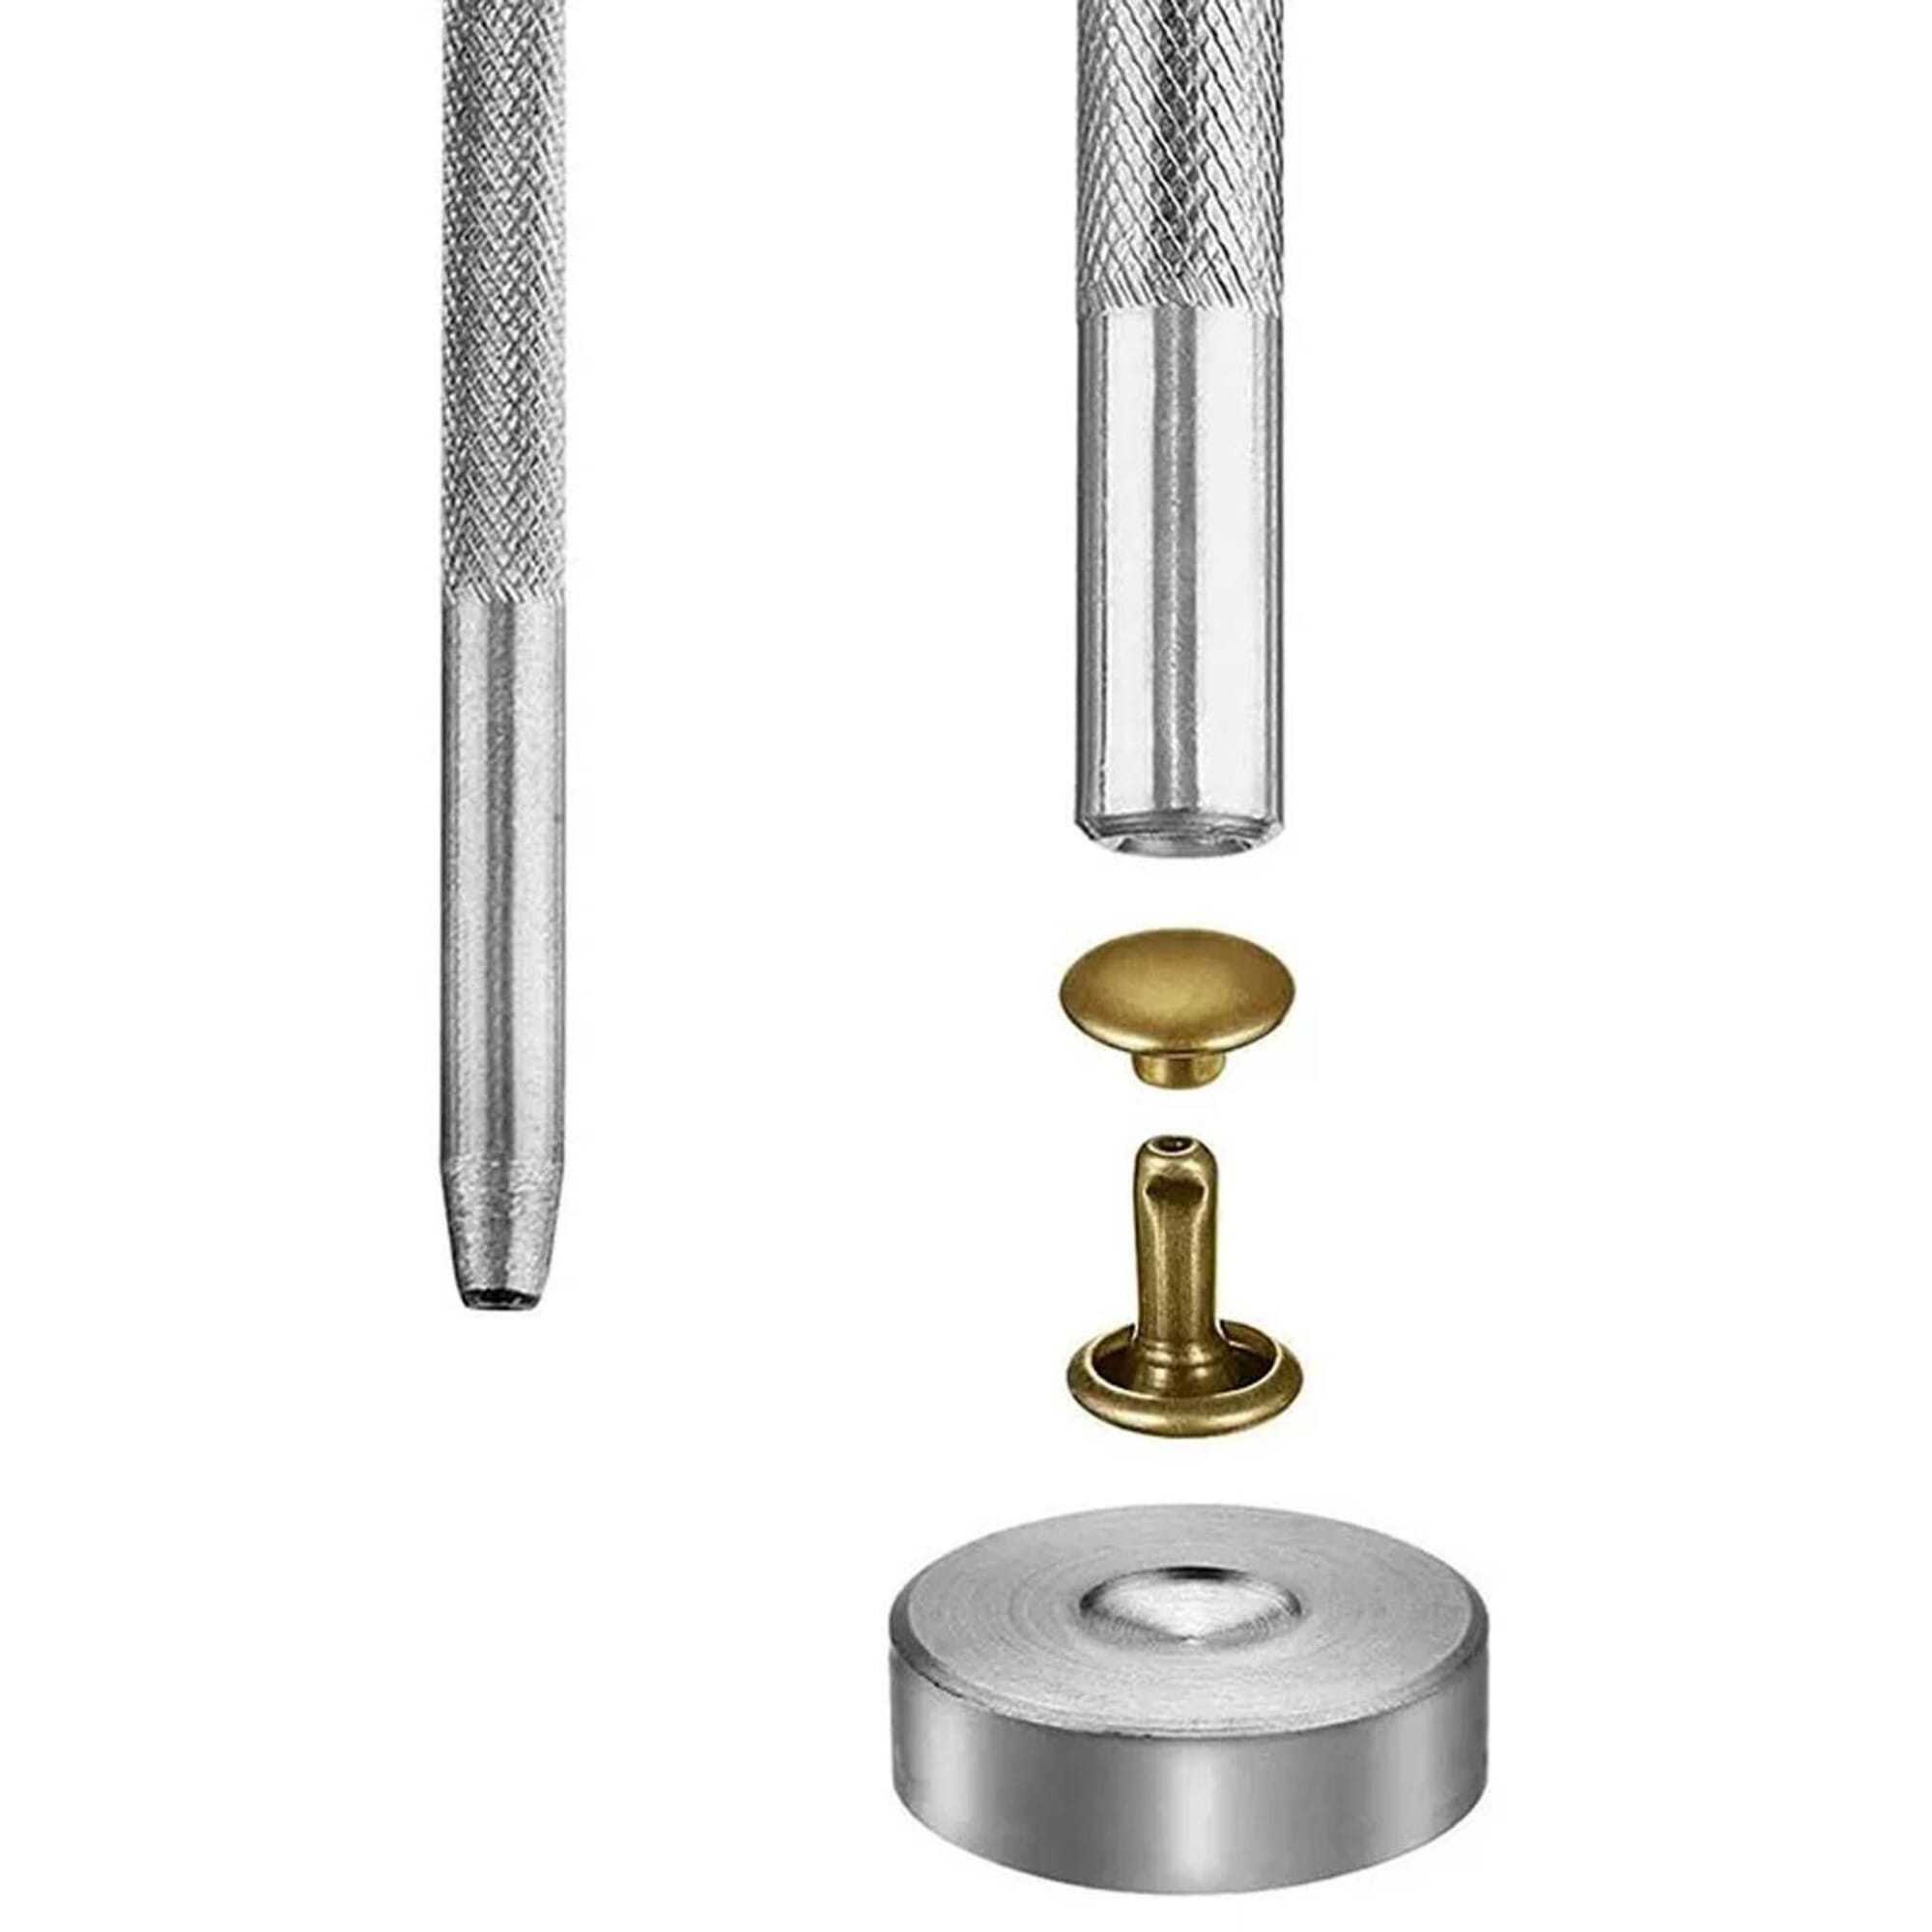 Rivet Setter for Double Cap Rivet Stud, Rivet Setting Tool Kit, Block  Anvil, Hole Cutter & 100 Double Cap Rivets in Silver (4 mm, Tool Kit)